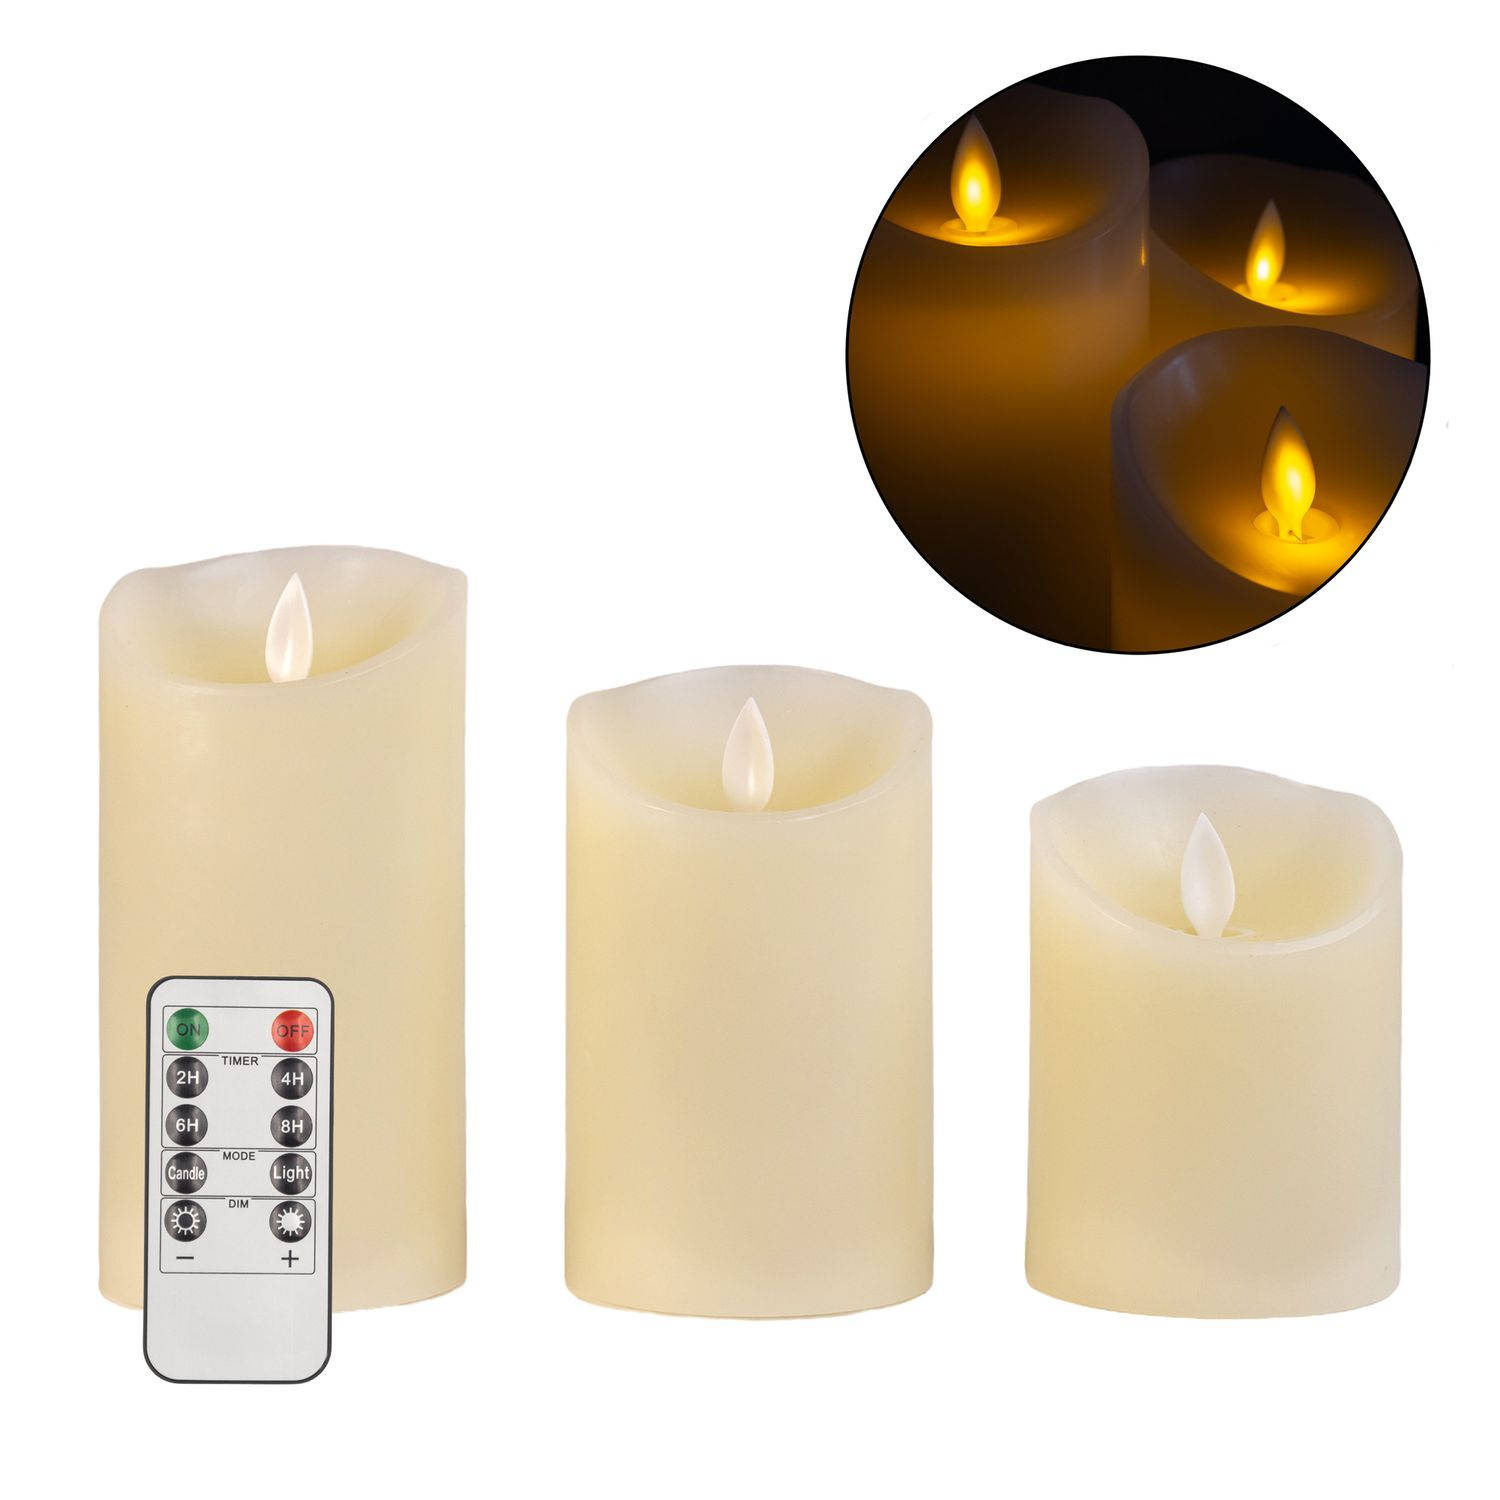 Intirilife 3x kaarsen vlamloze led kaarsen van was in wit - 7,5 x 15 / 12,5 / 10 cm - zuilkaars met afstandsbediening